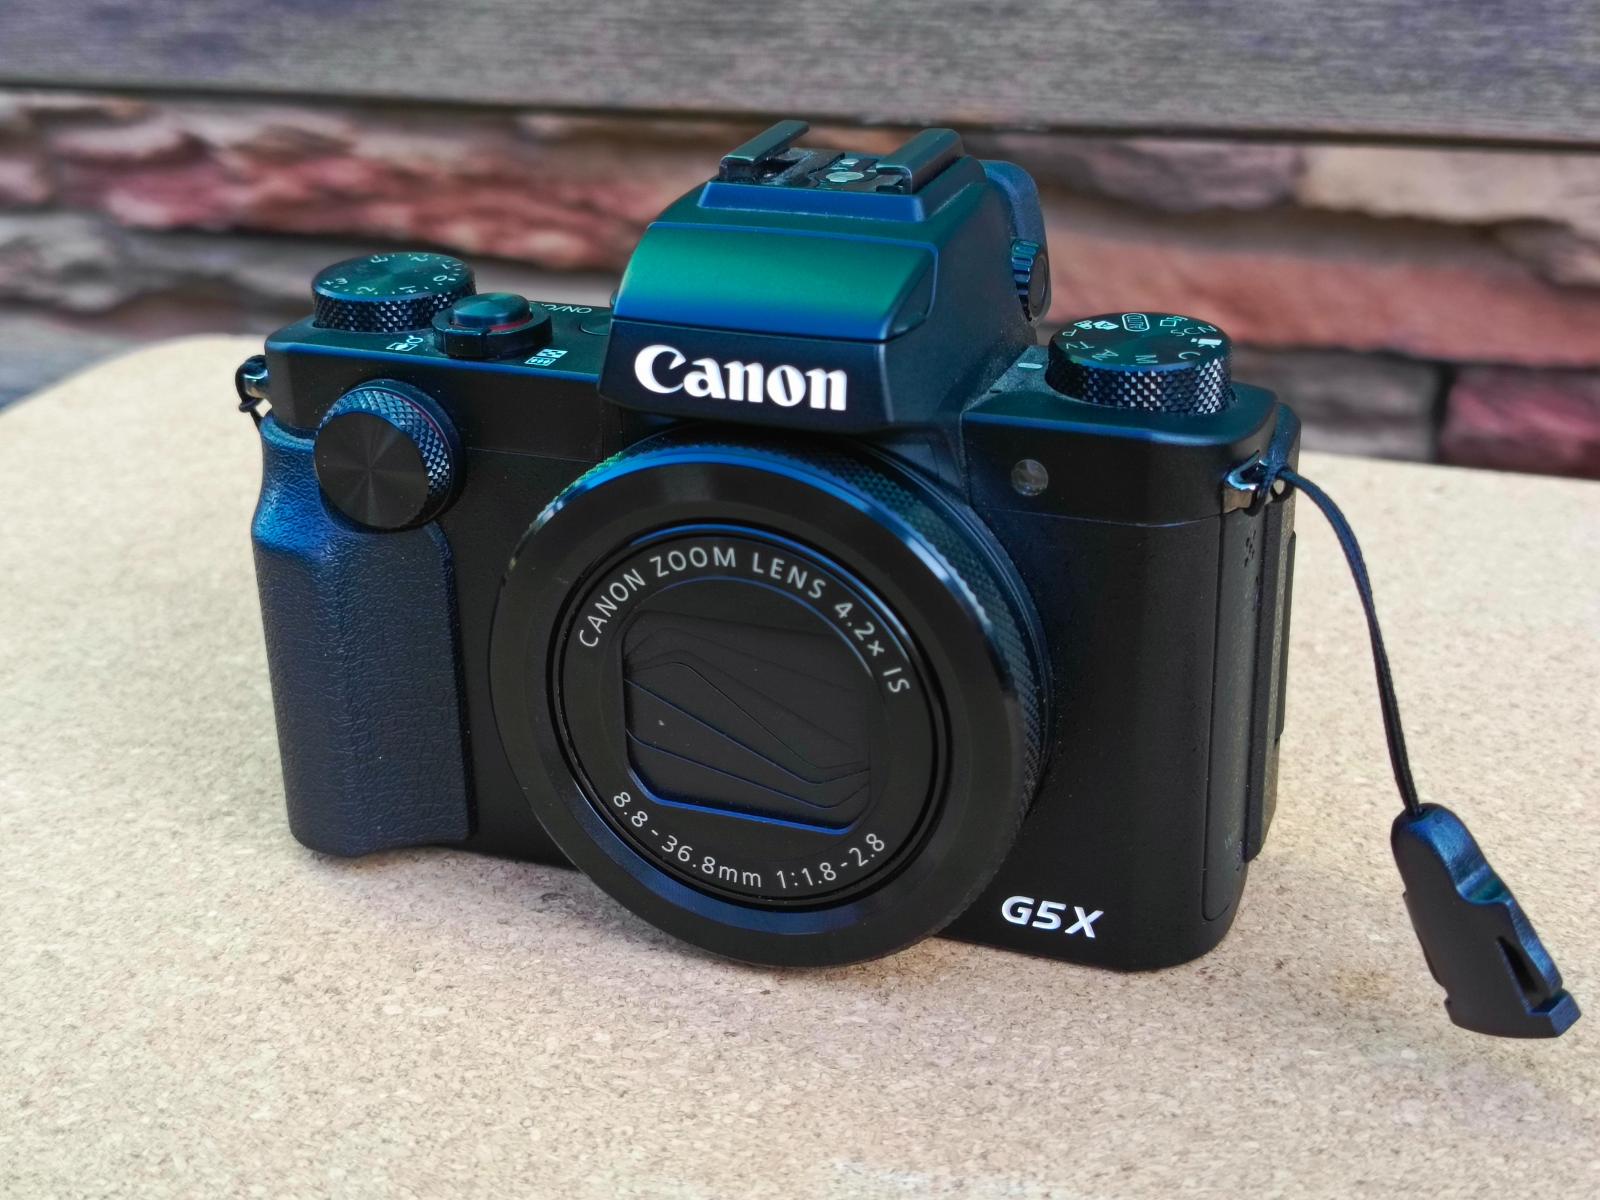 CANON POWERSHOT G5X, špičkový fotoaparát, VELKÝ SNÍMAČ - Foto